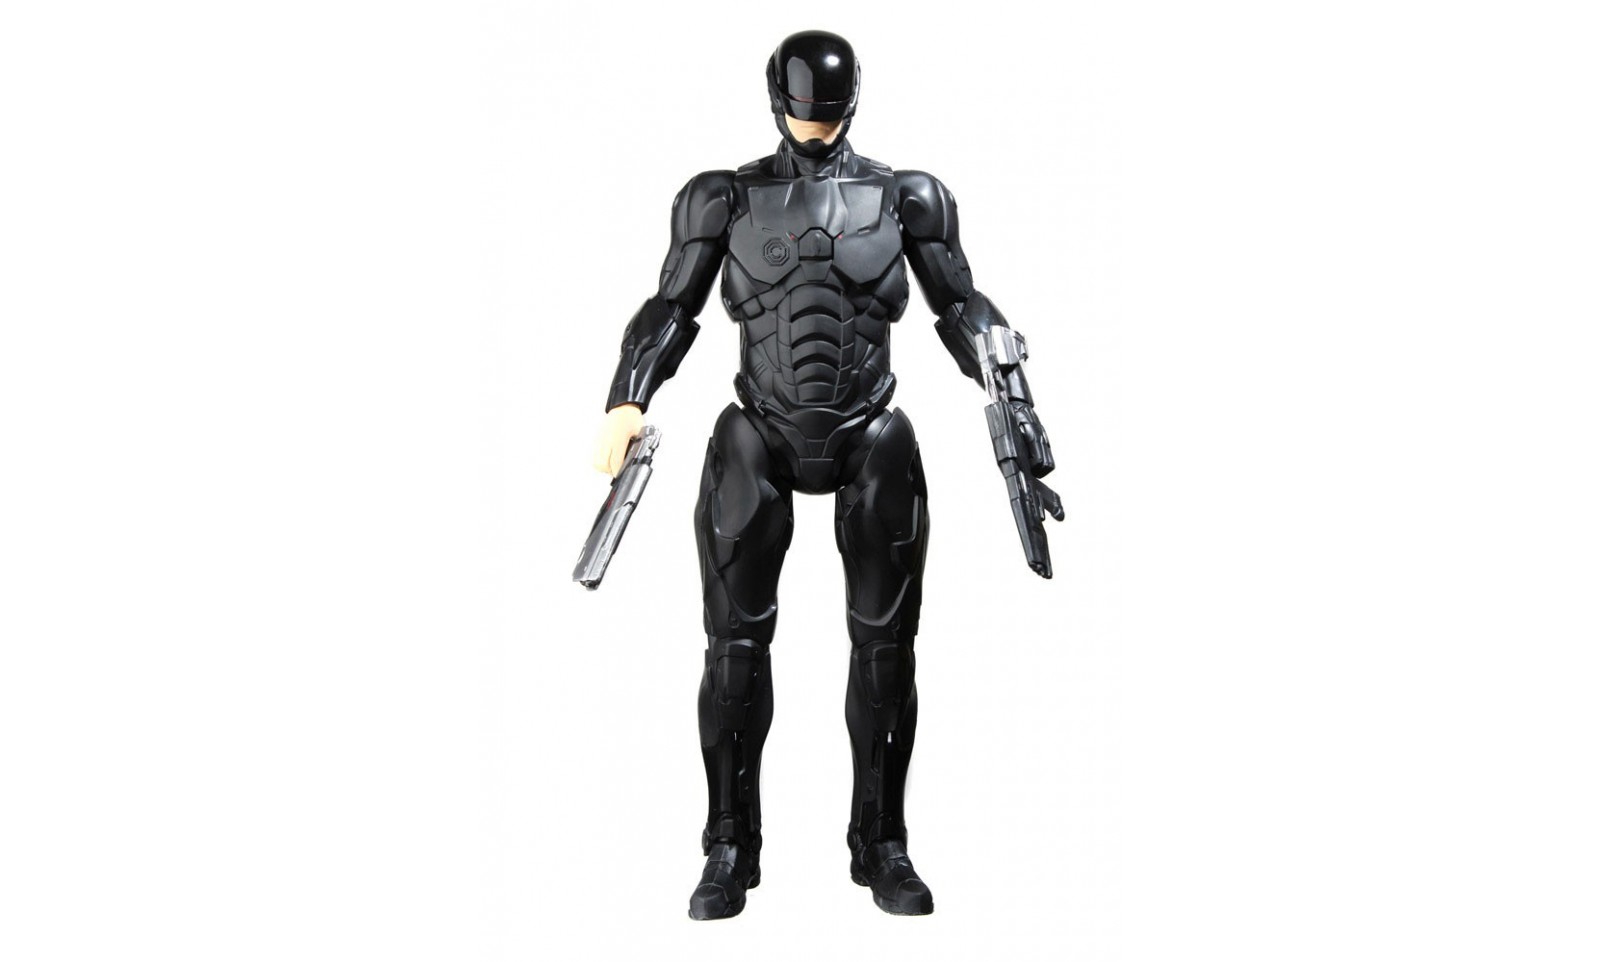 RoboCop 2014 - Figurine Électronique Robocop 3.0 noir - 30 cm